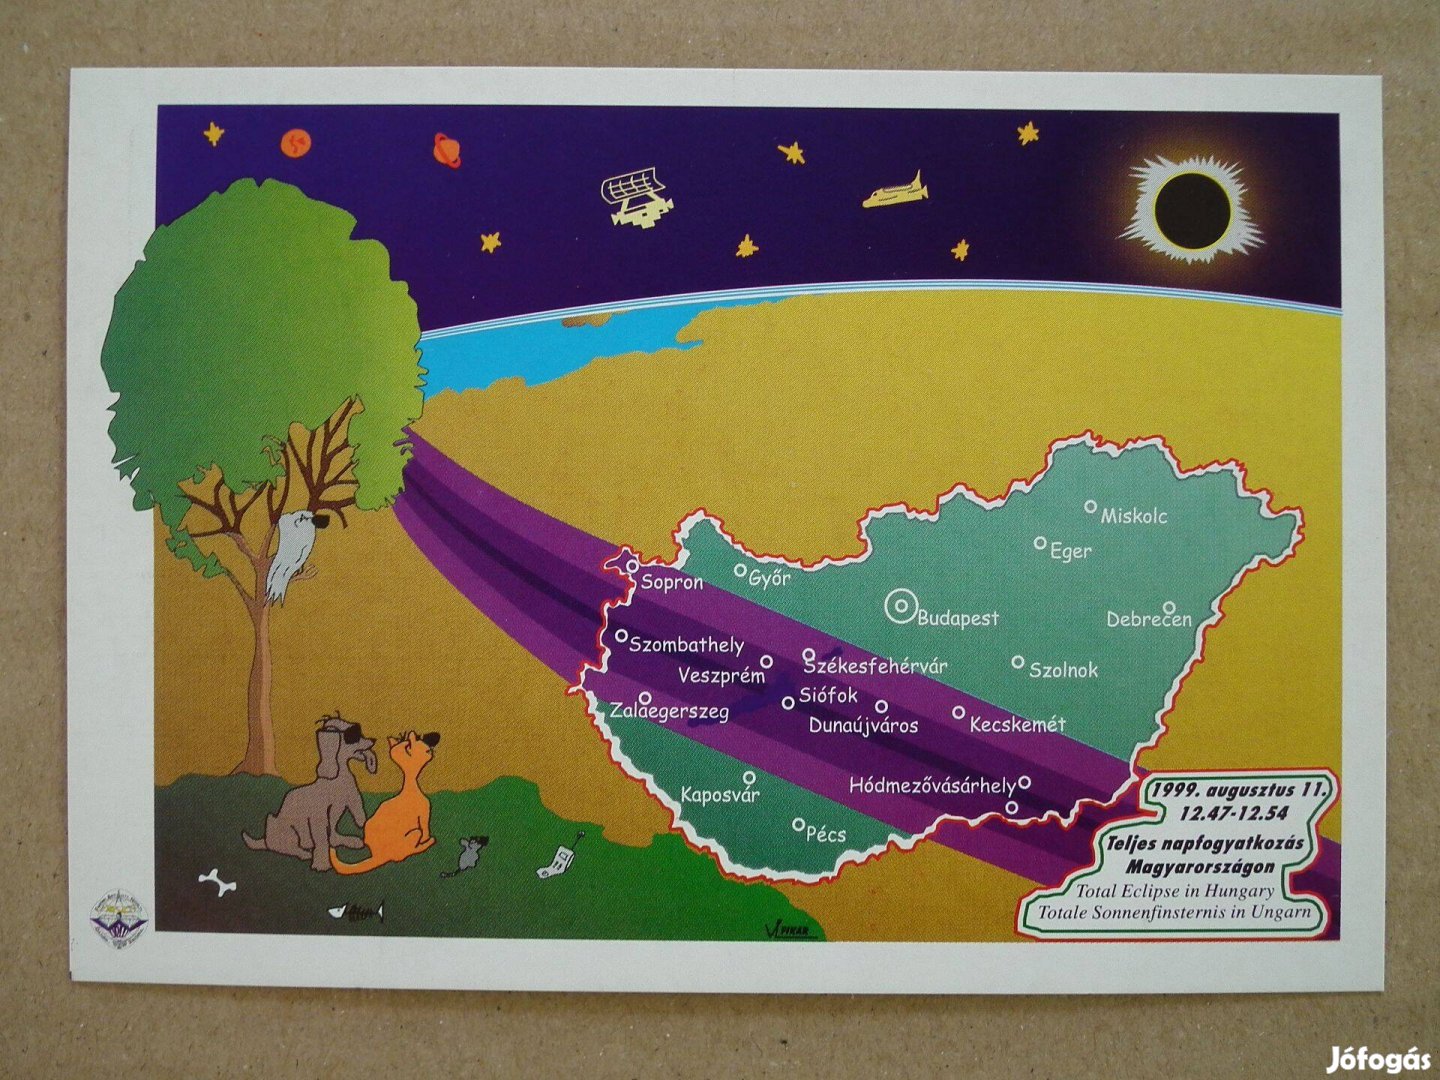 1999-es teljes napfogyatkozás emlékére - képeslapok emlékbélyegzéssel